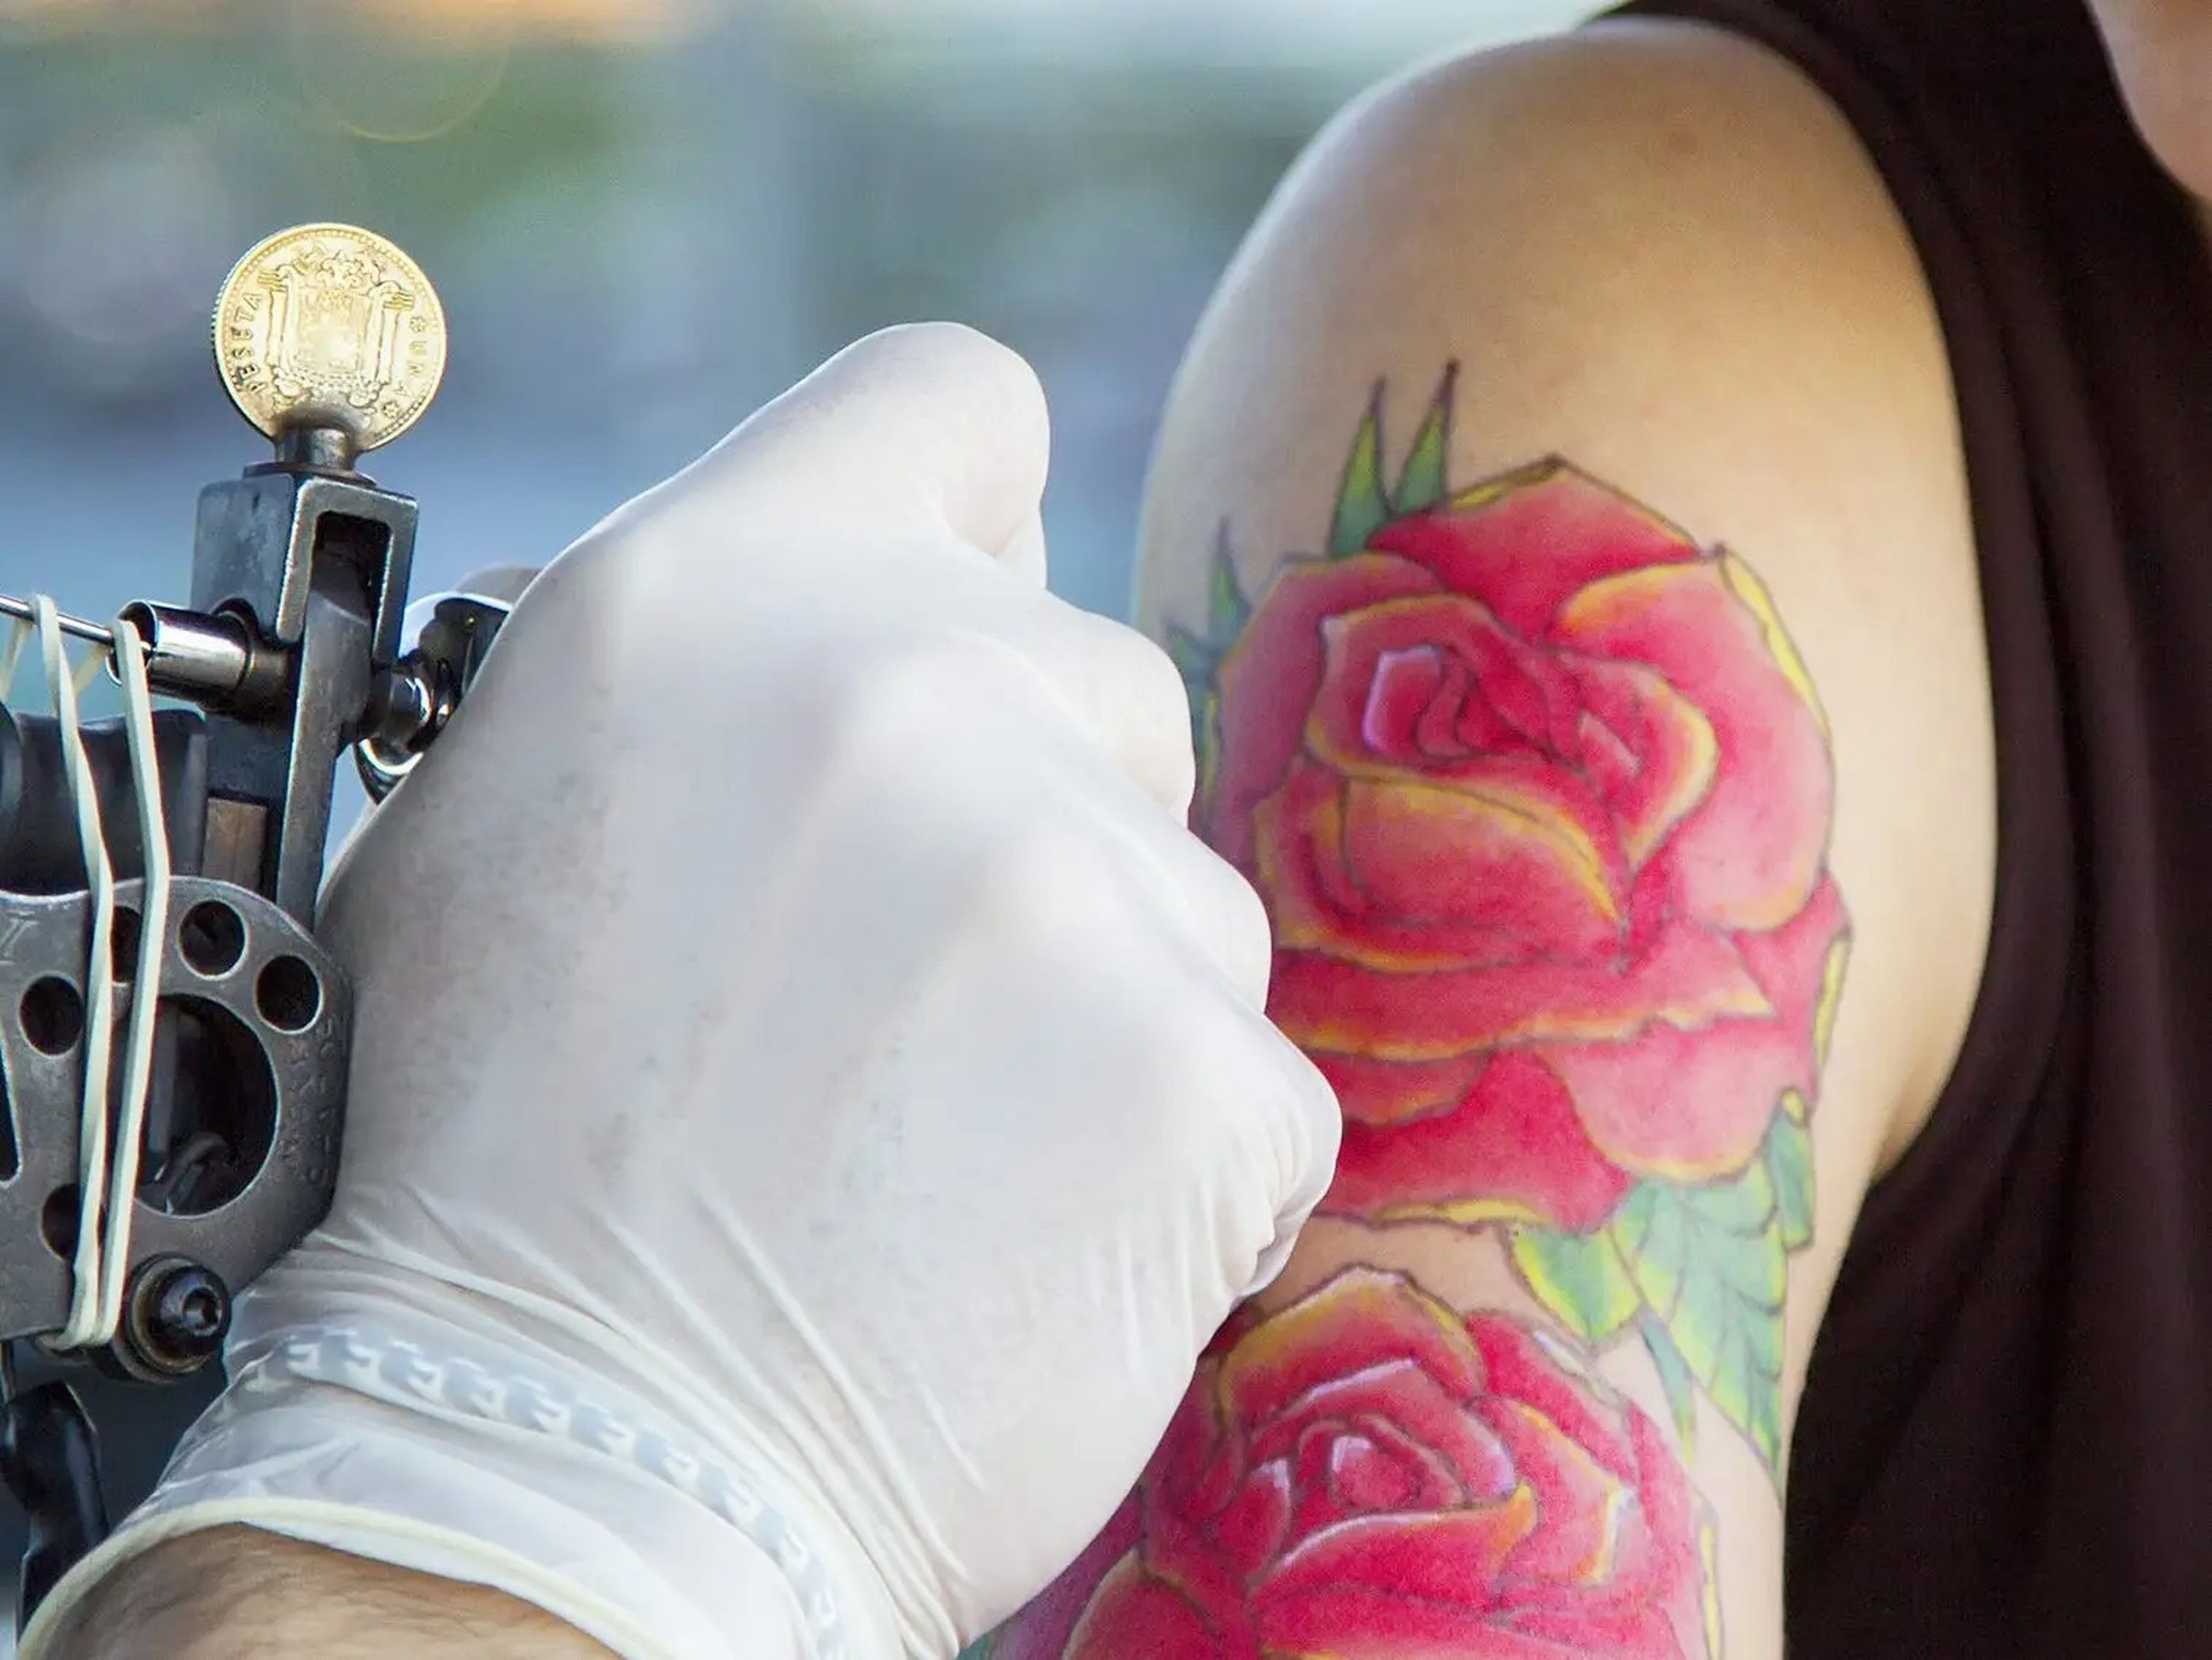 Agregar color sigue siendo tendencia en los tatuajes.